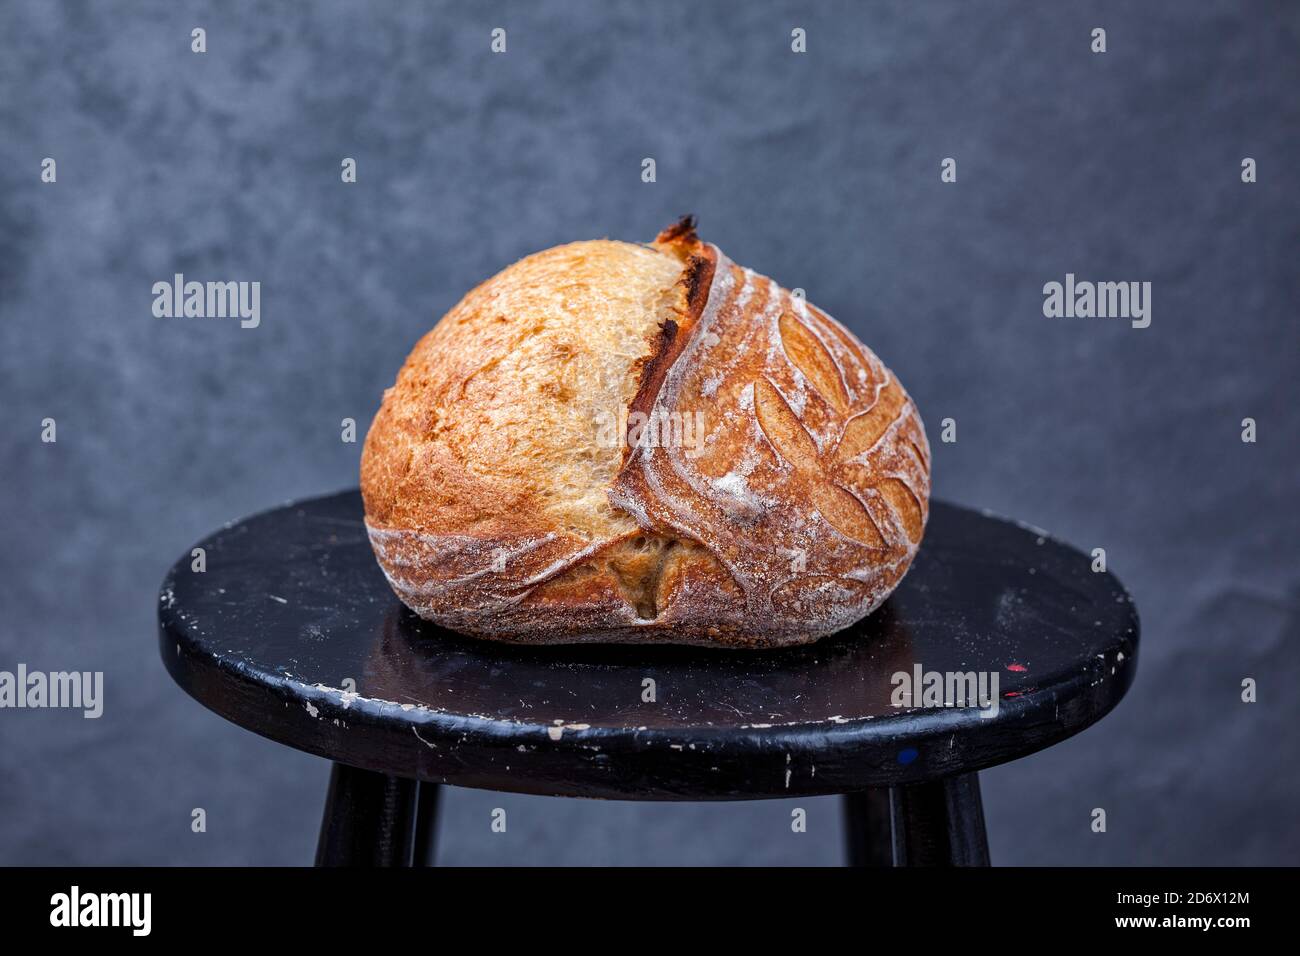 Pain artisanal de pain de pâte au levain maison traditionnel avec croûte sur un tabouret noir Banque D'Images